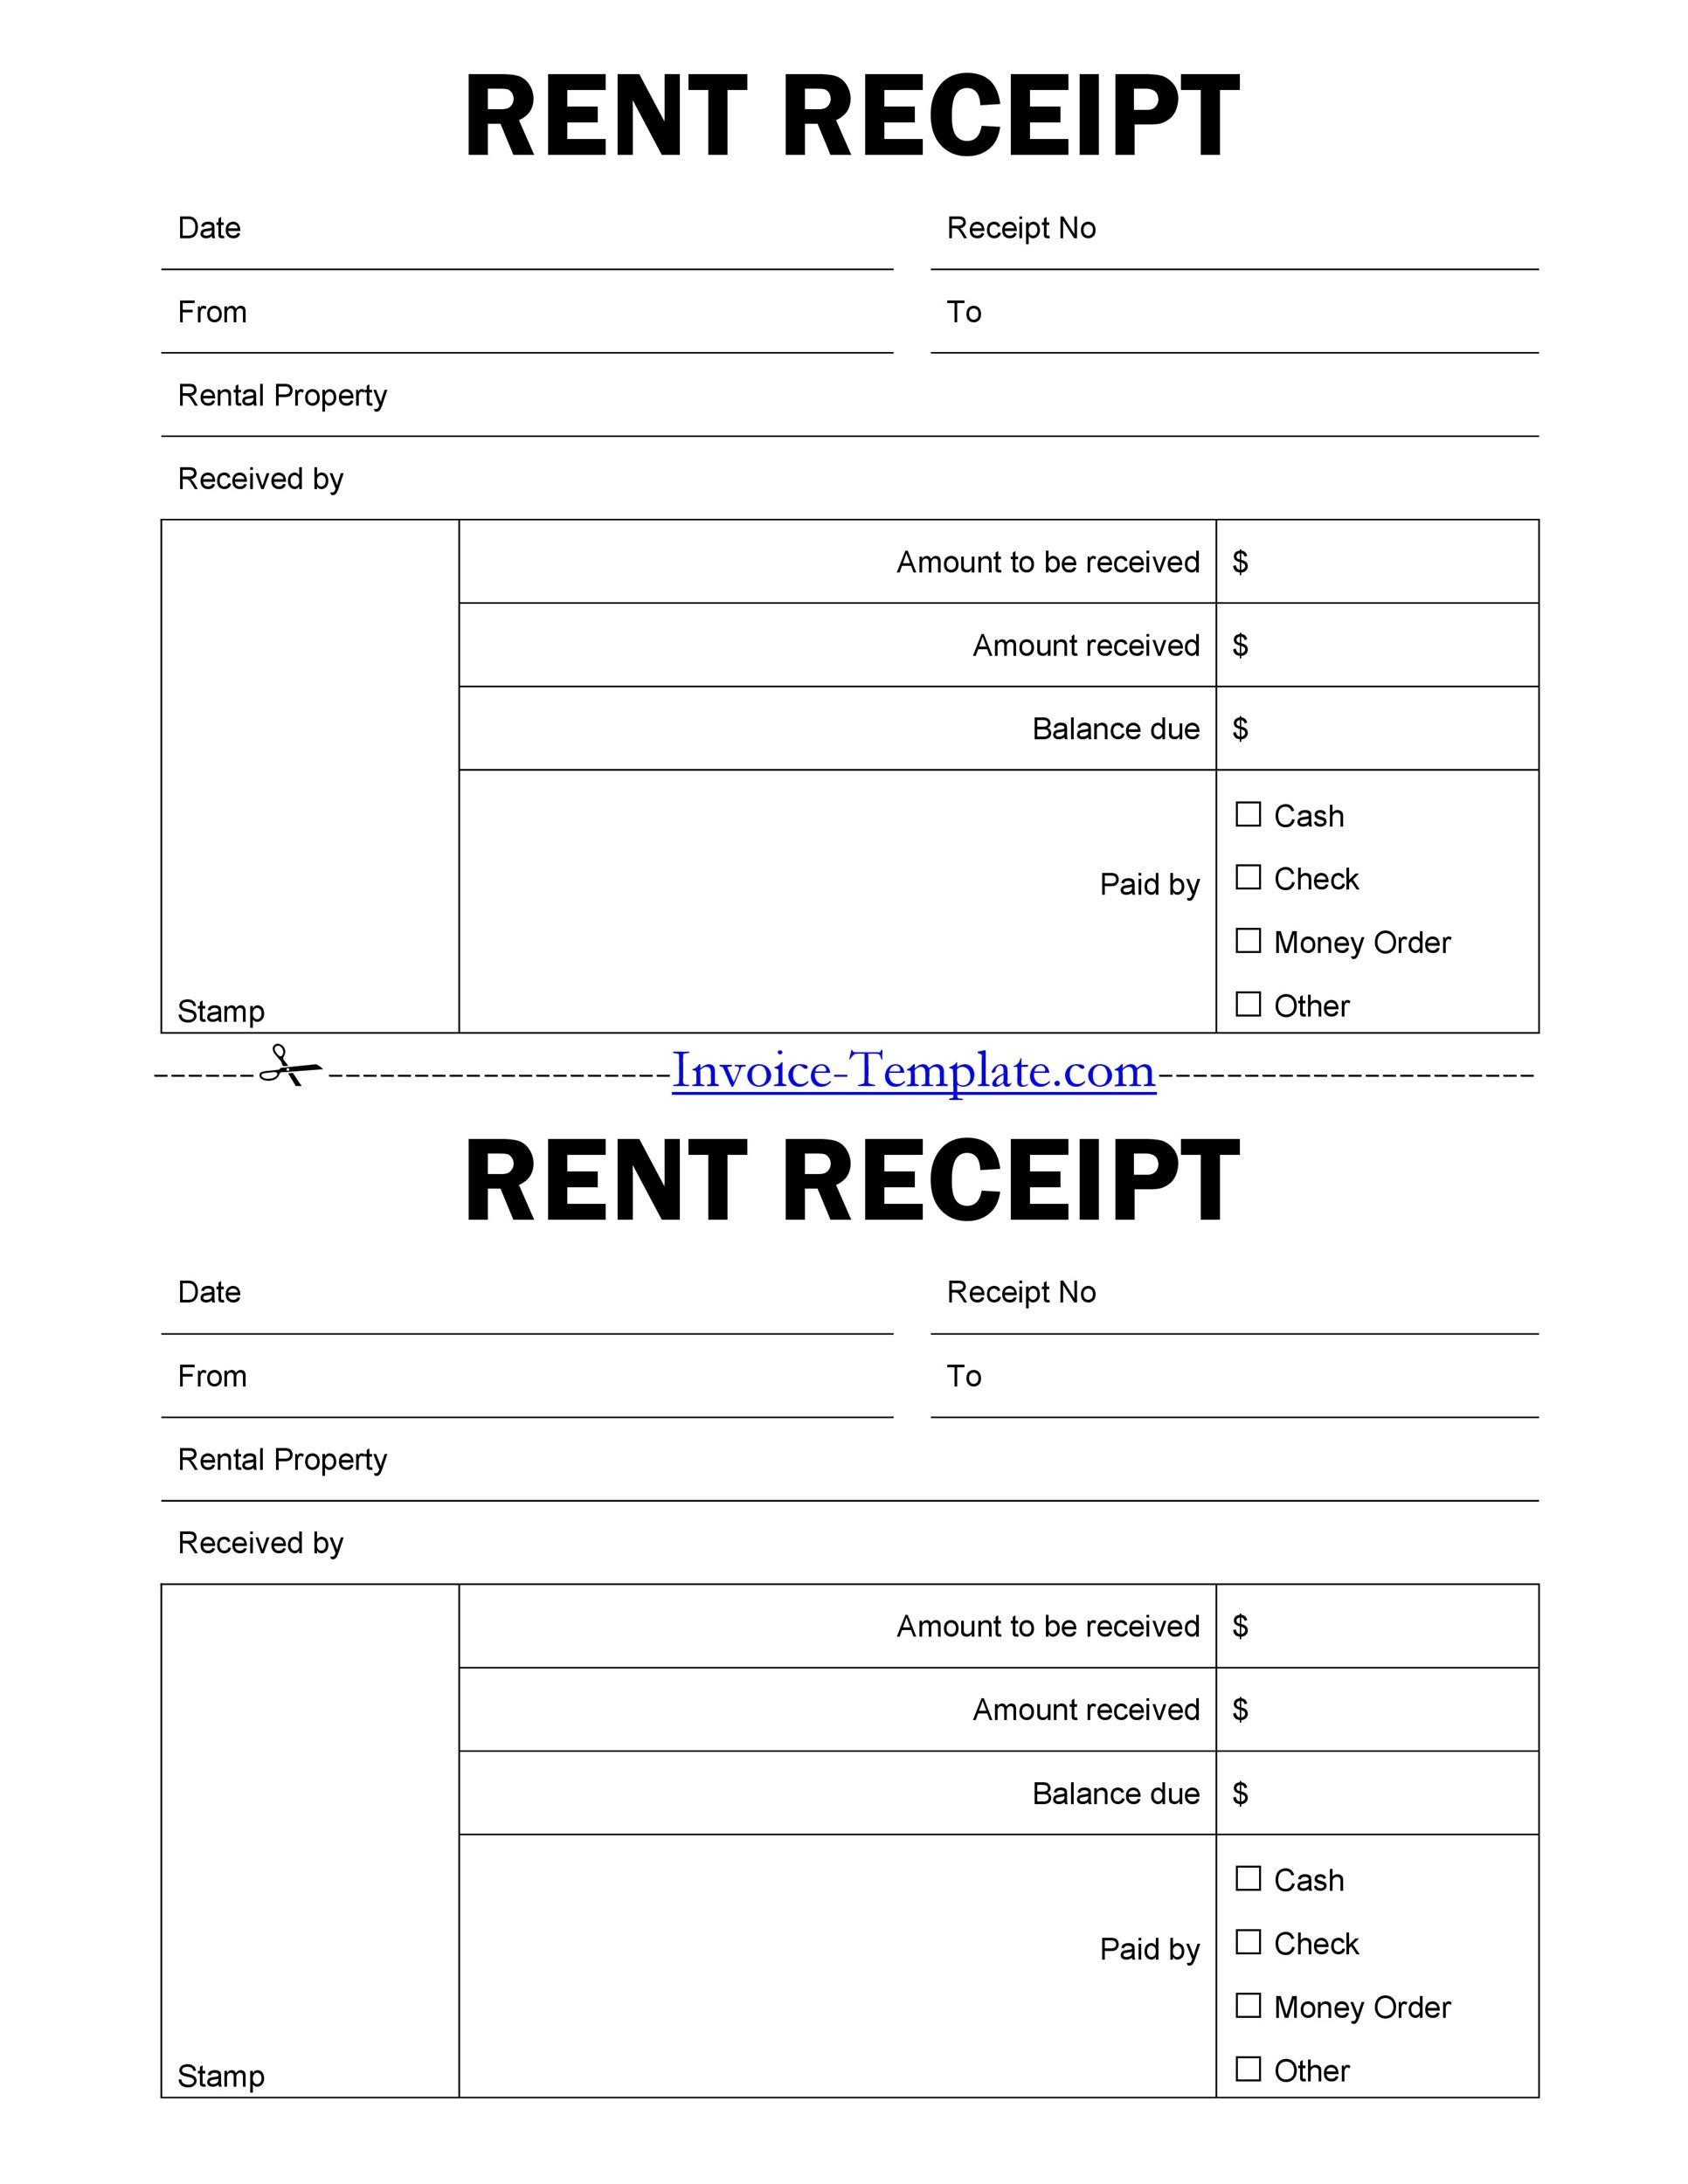 free-printable-rent-receipt-forms-printable-templates